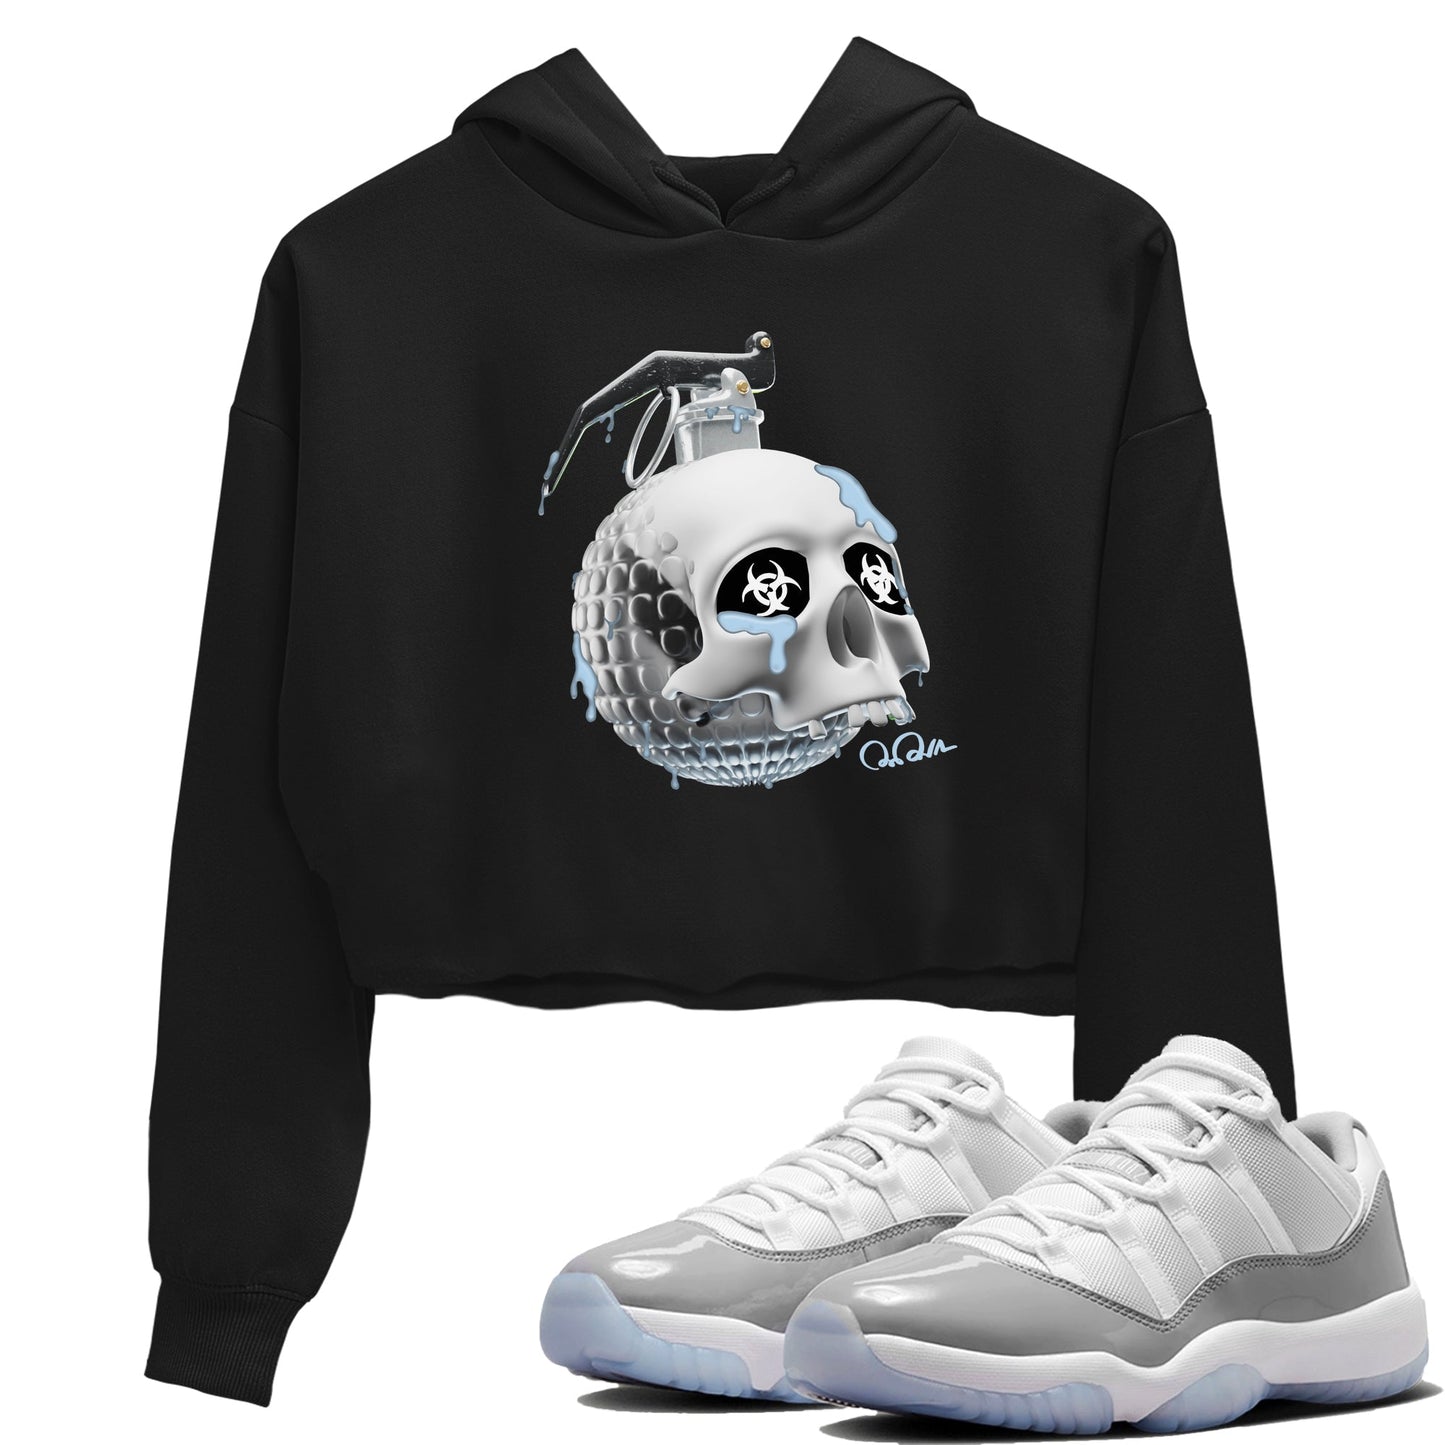 Air Jordan 11 White Cement Sneaker Tees Drip Gear Zone Skull Bomb Sneaker Tees Air Jordan 11 Cement Grey Shirt Women's Shirts Black 1